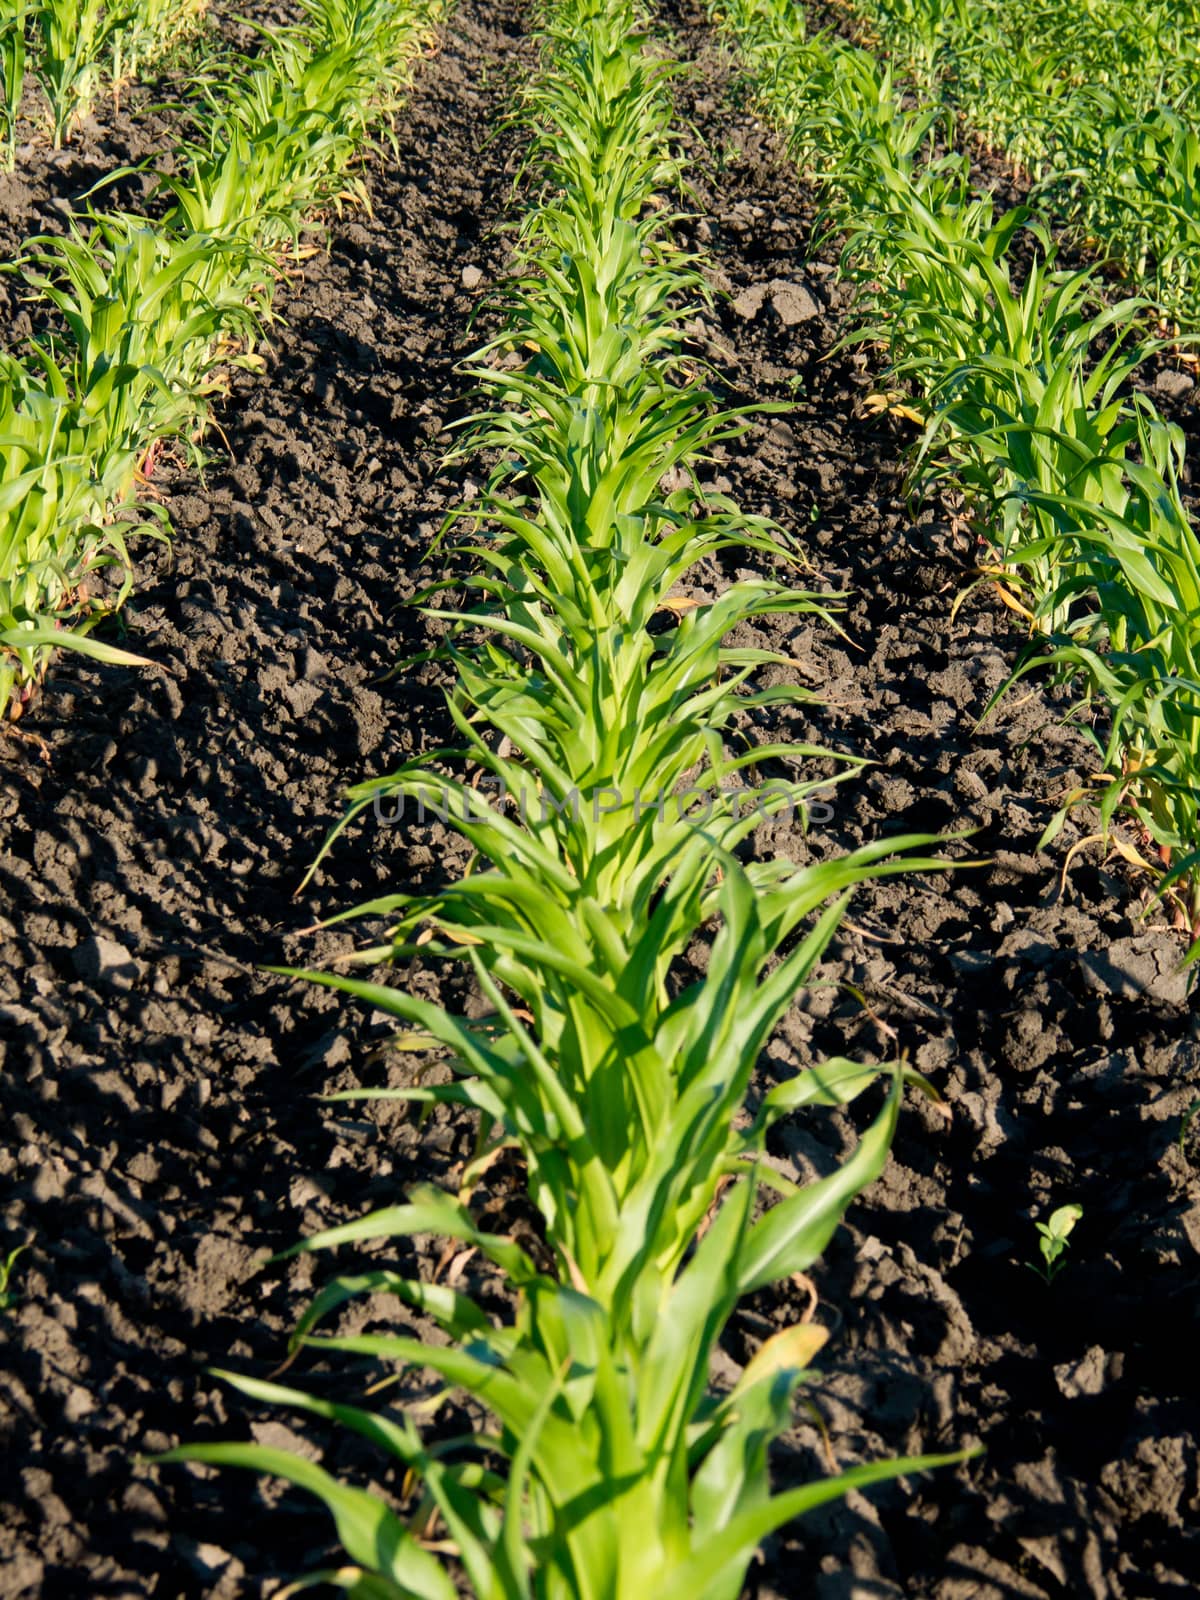 In developing corn plant (Zea mays) field.